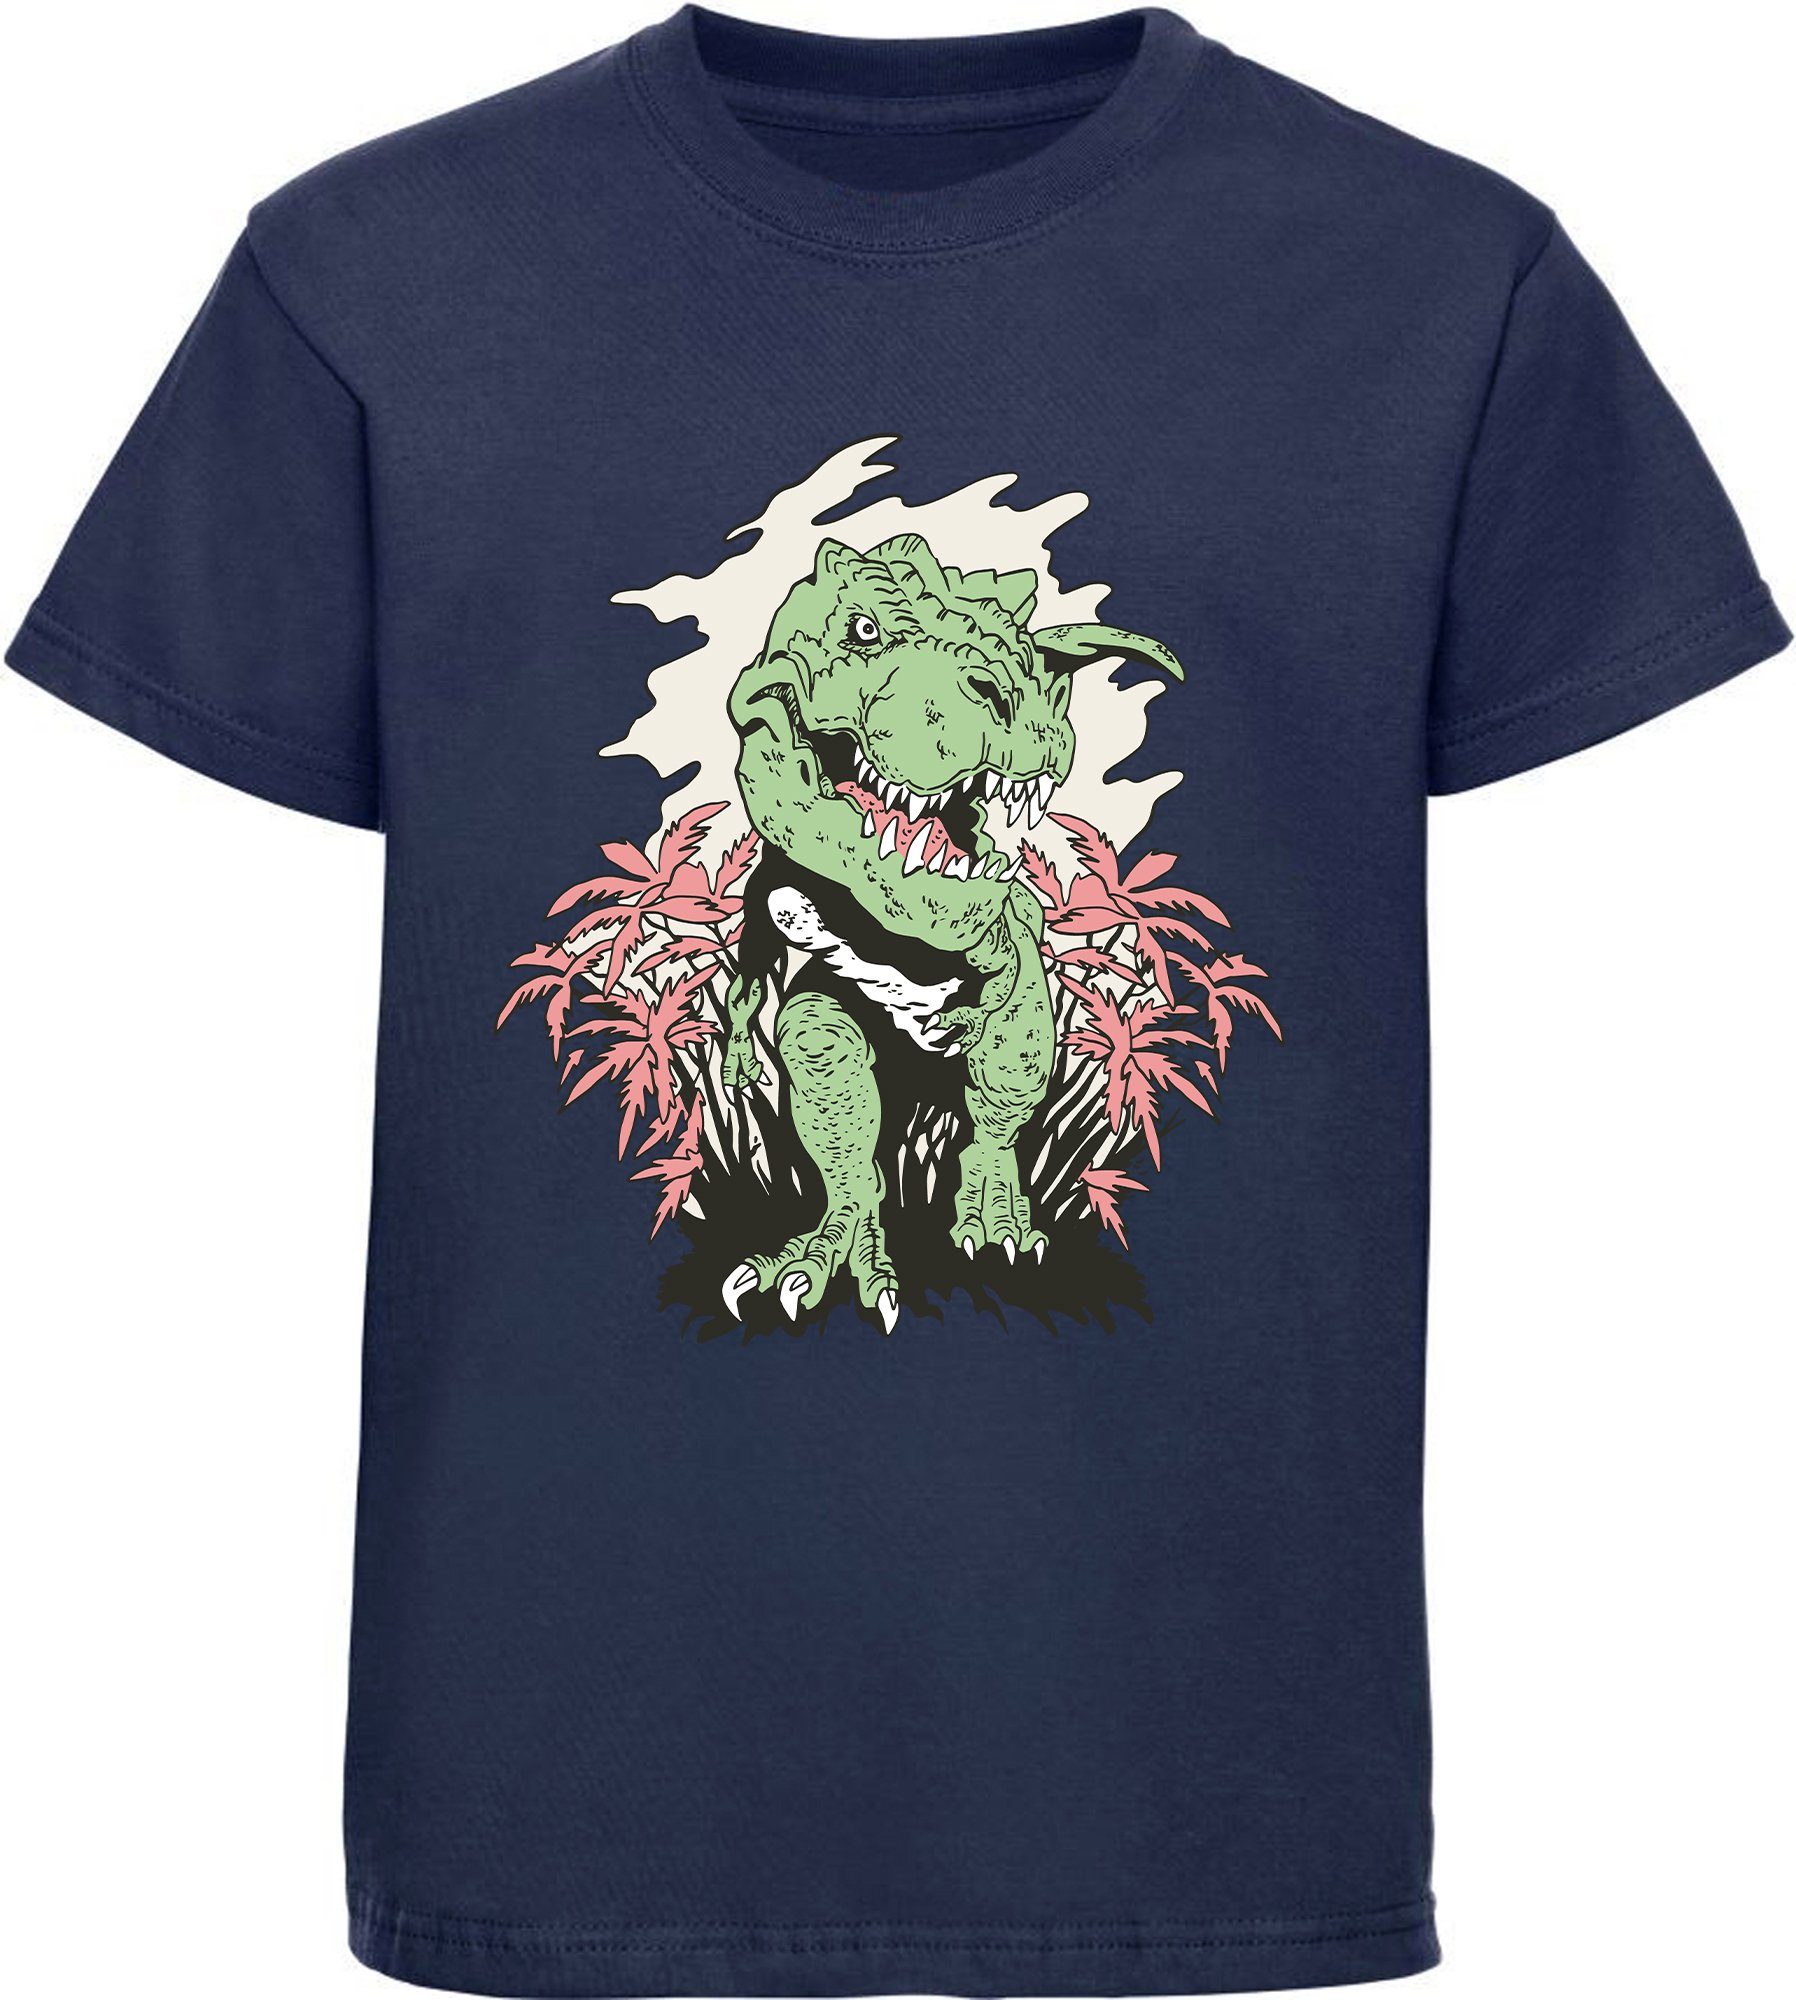 MyDesign24 Print-Shirt bedrucktes Kinder T-Shirt T-Rex der aus einem Busch kommt 100% Baumwolle mit Dino Aufdruck, schwarz, weiß, rot, blau, i101 navy blau